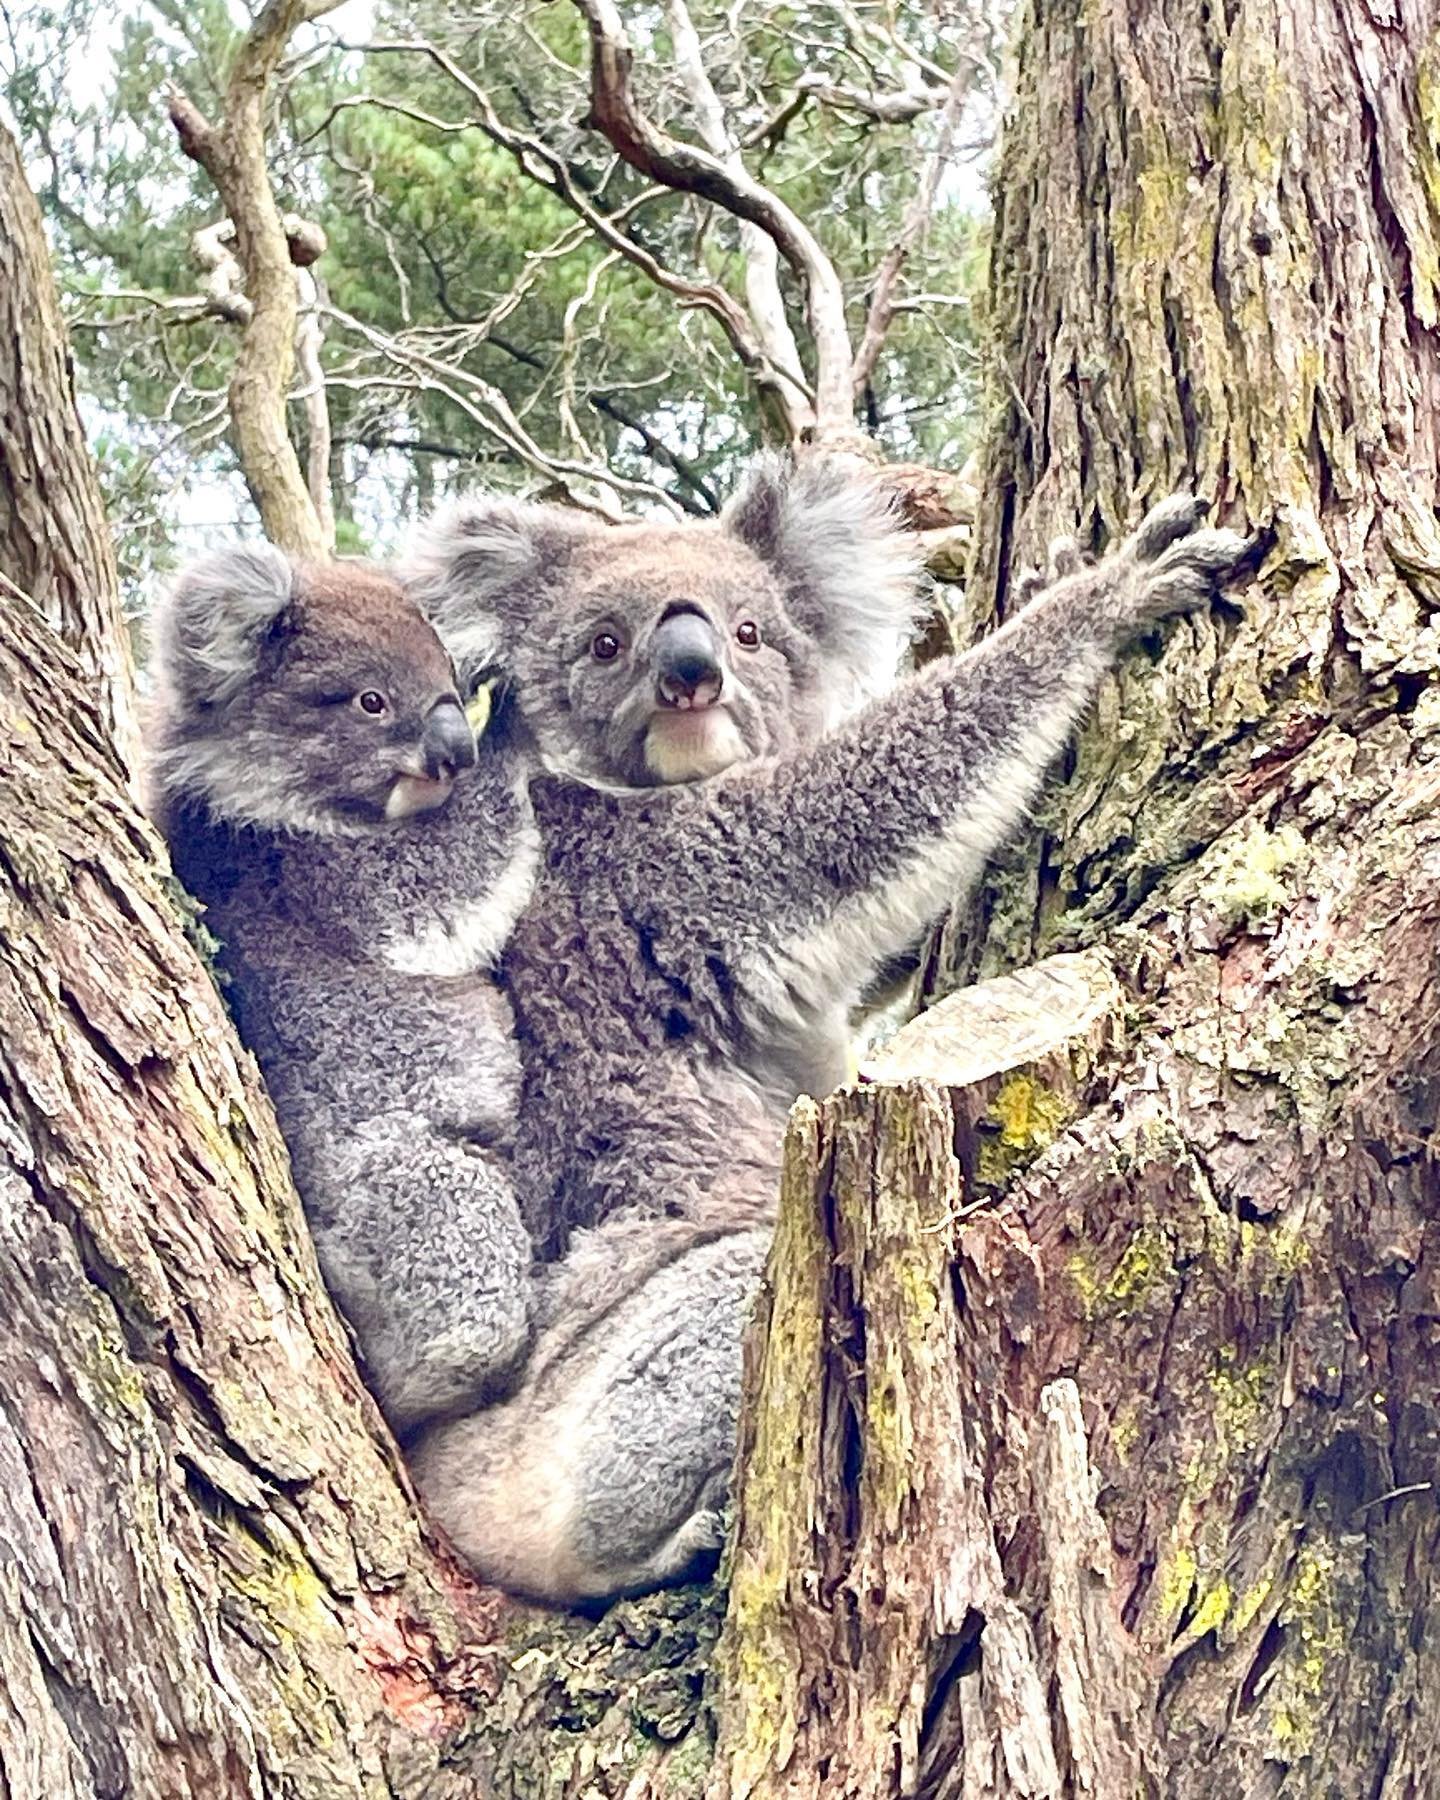 My biggest dream became reality ❤️ #koala #koalabear #mydream #morningtonpeninsula #australia #eukalyptus #koalababy #loveaustralia #nature